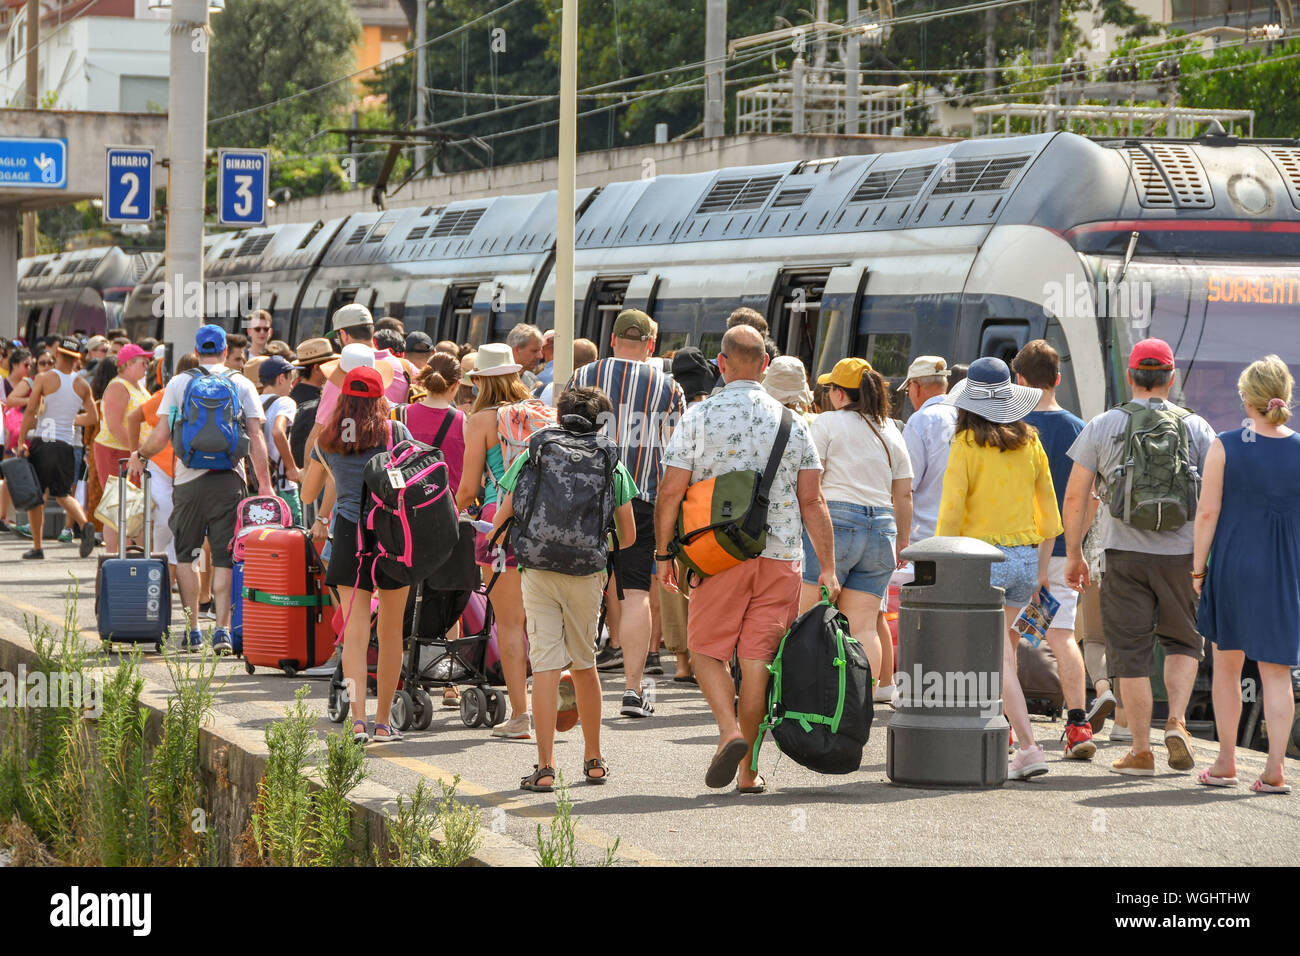 SORRENTO, ITALIEN - AUGUST 2019: Masse der Leute auf einer Plattform verfing sich ein Zug vom Bahnhof von Sorrent. Stockfoto